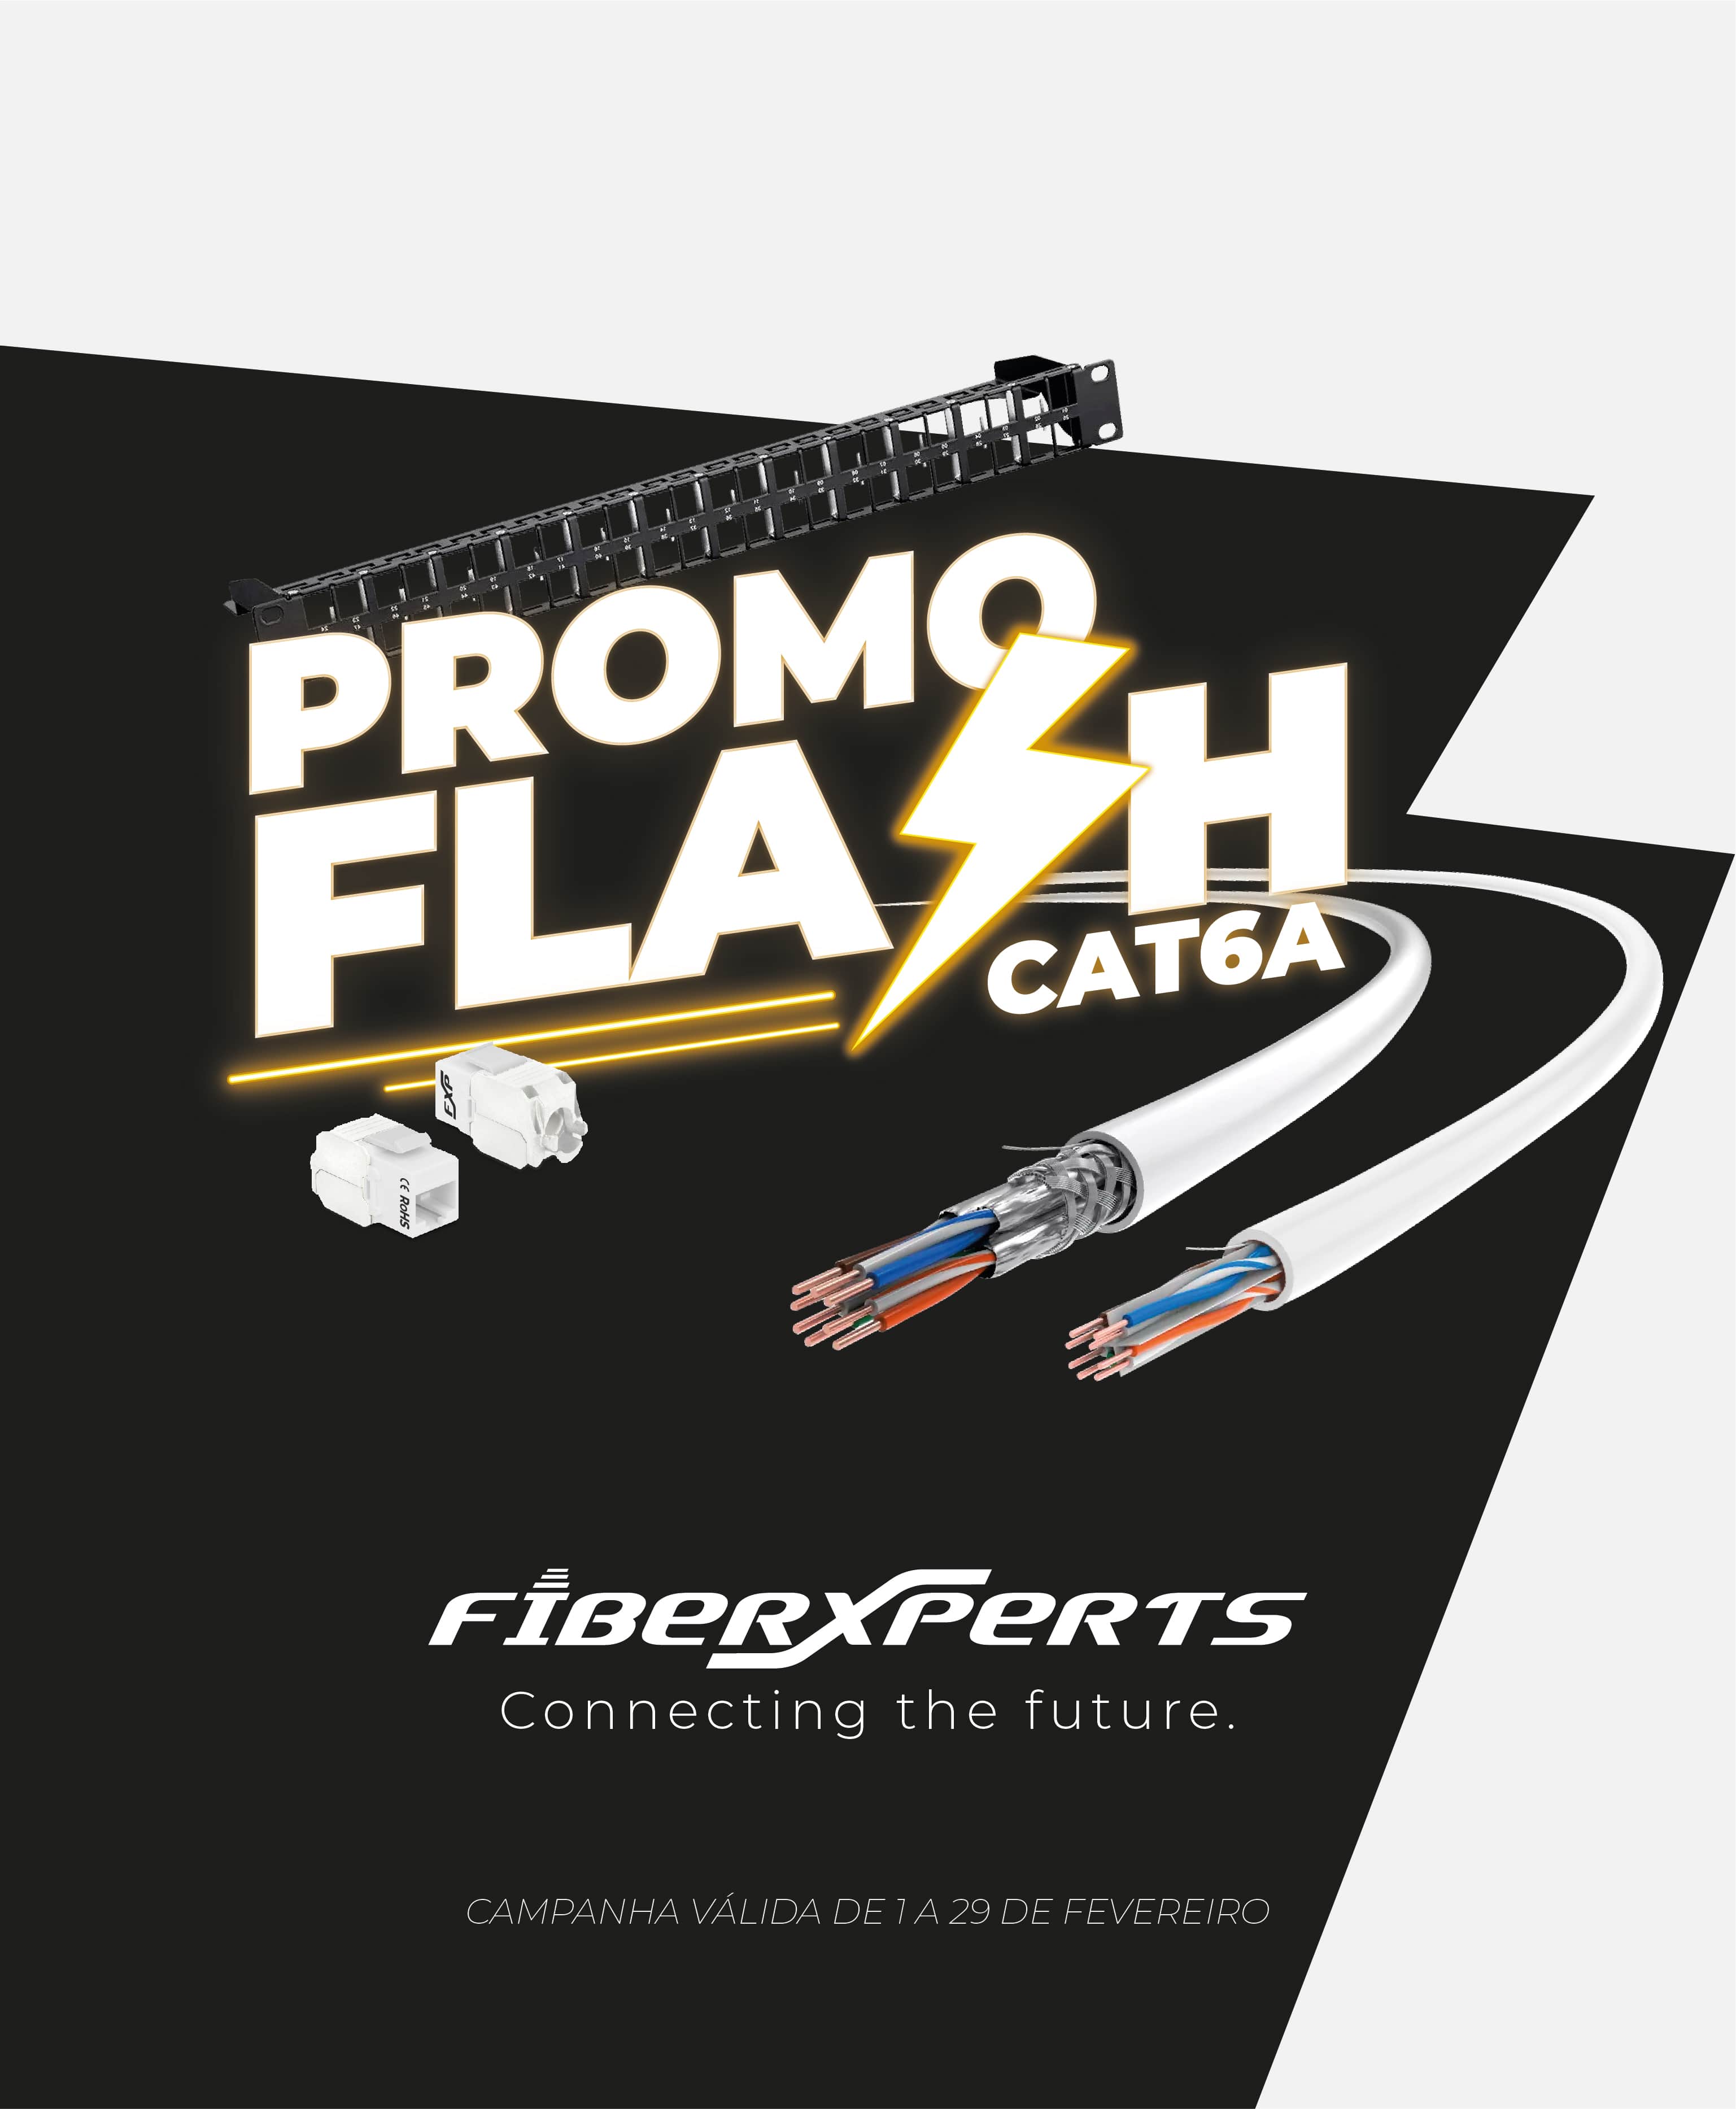 Promo Flash CAT6A